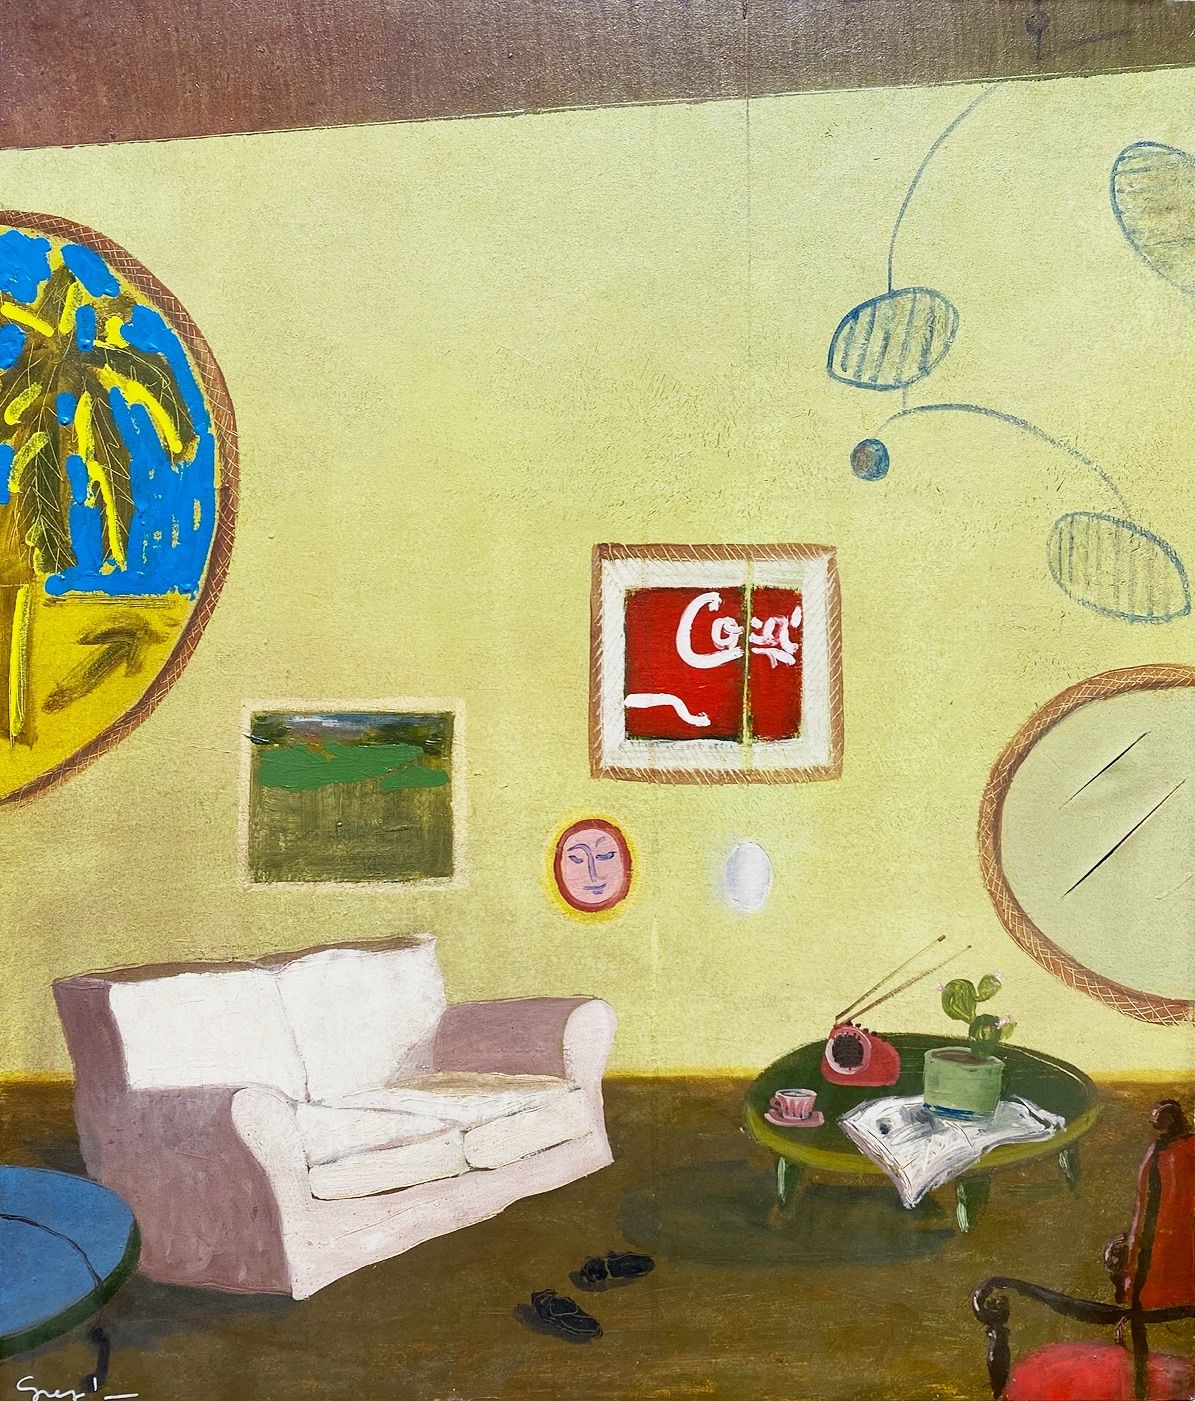 EMANUELE GREGOLIN Gregolin Emanuele

米兰（Mi）1972



室内

1990



布面油画

70,00x60,00